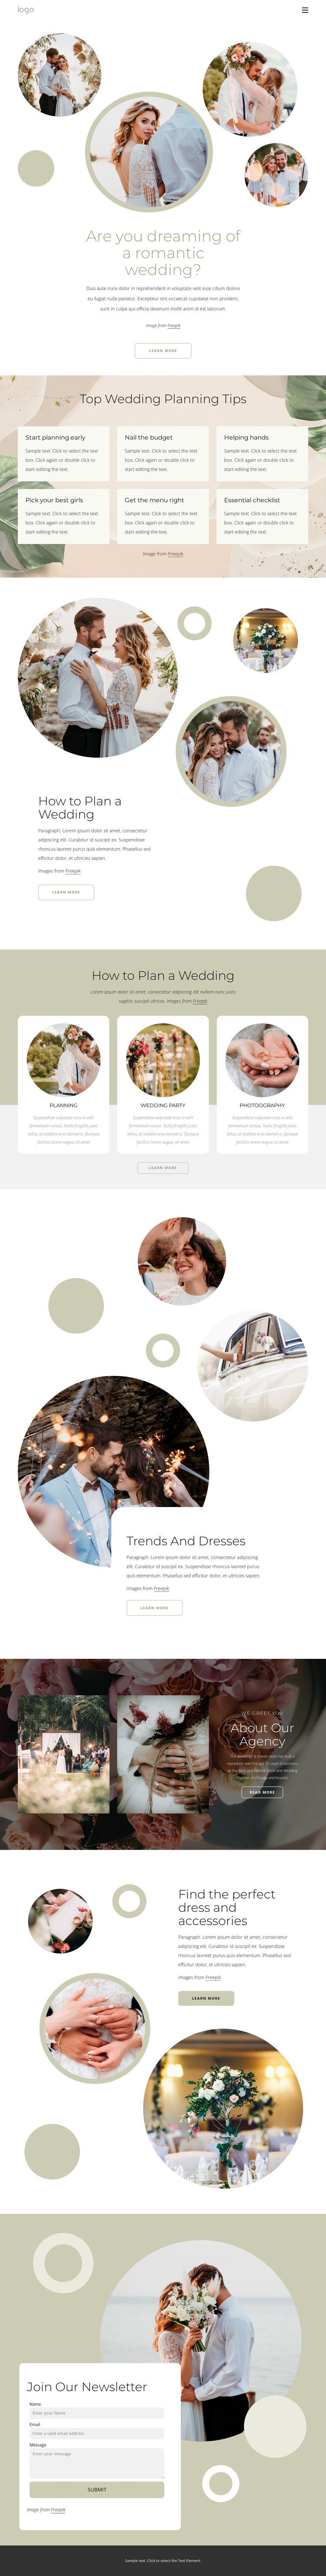 Romantic wedding Website Builder Software